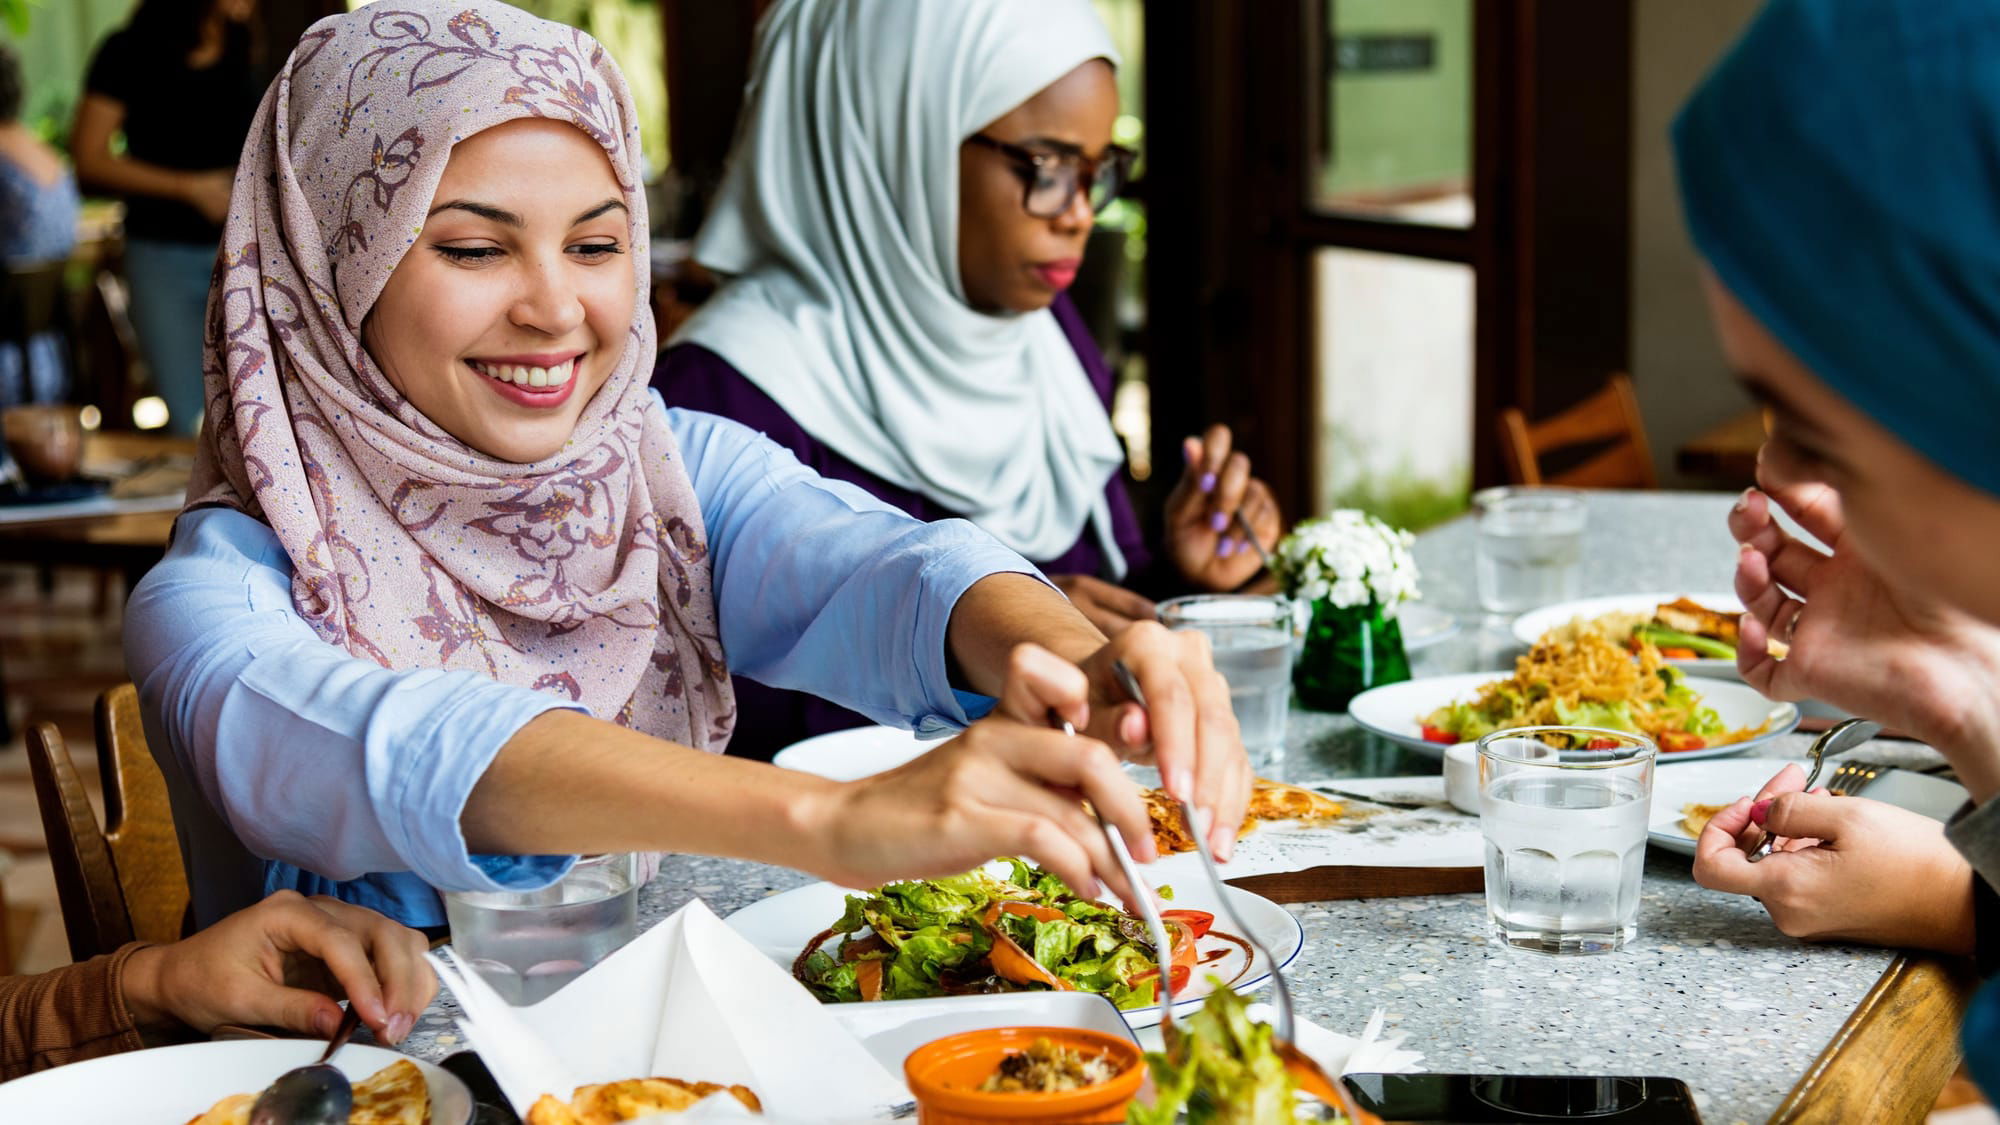 طبيب يقدم 12 نصيحة لتفادي الانتفاخ وعسر الهضم في رمضان